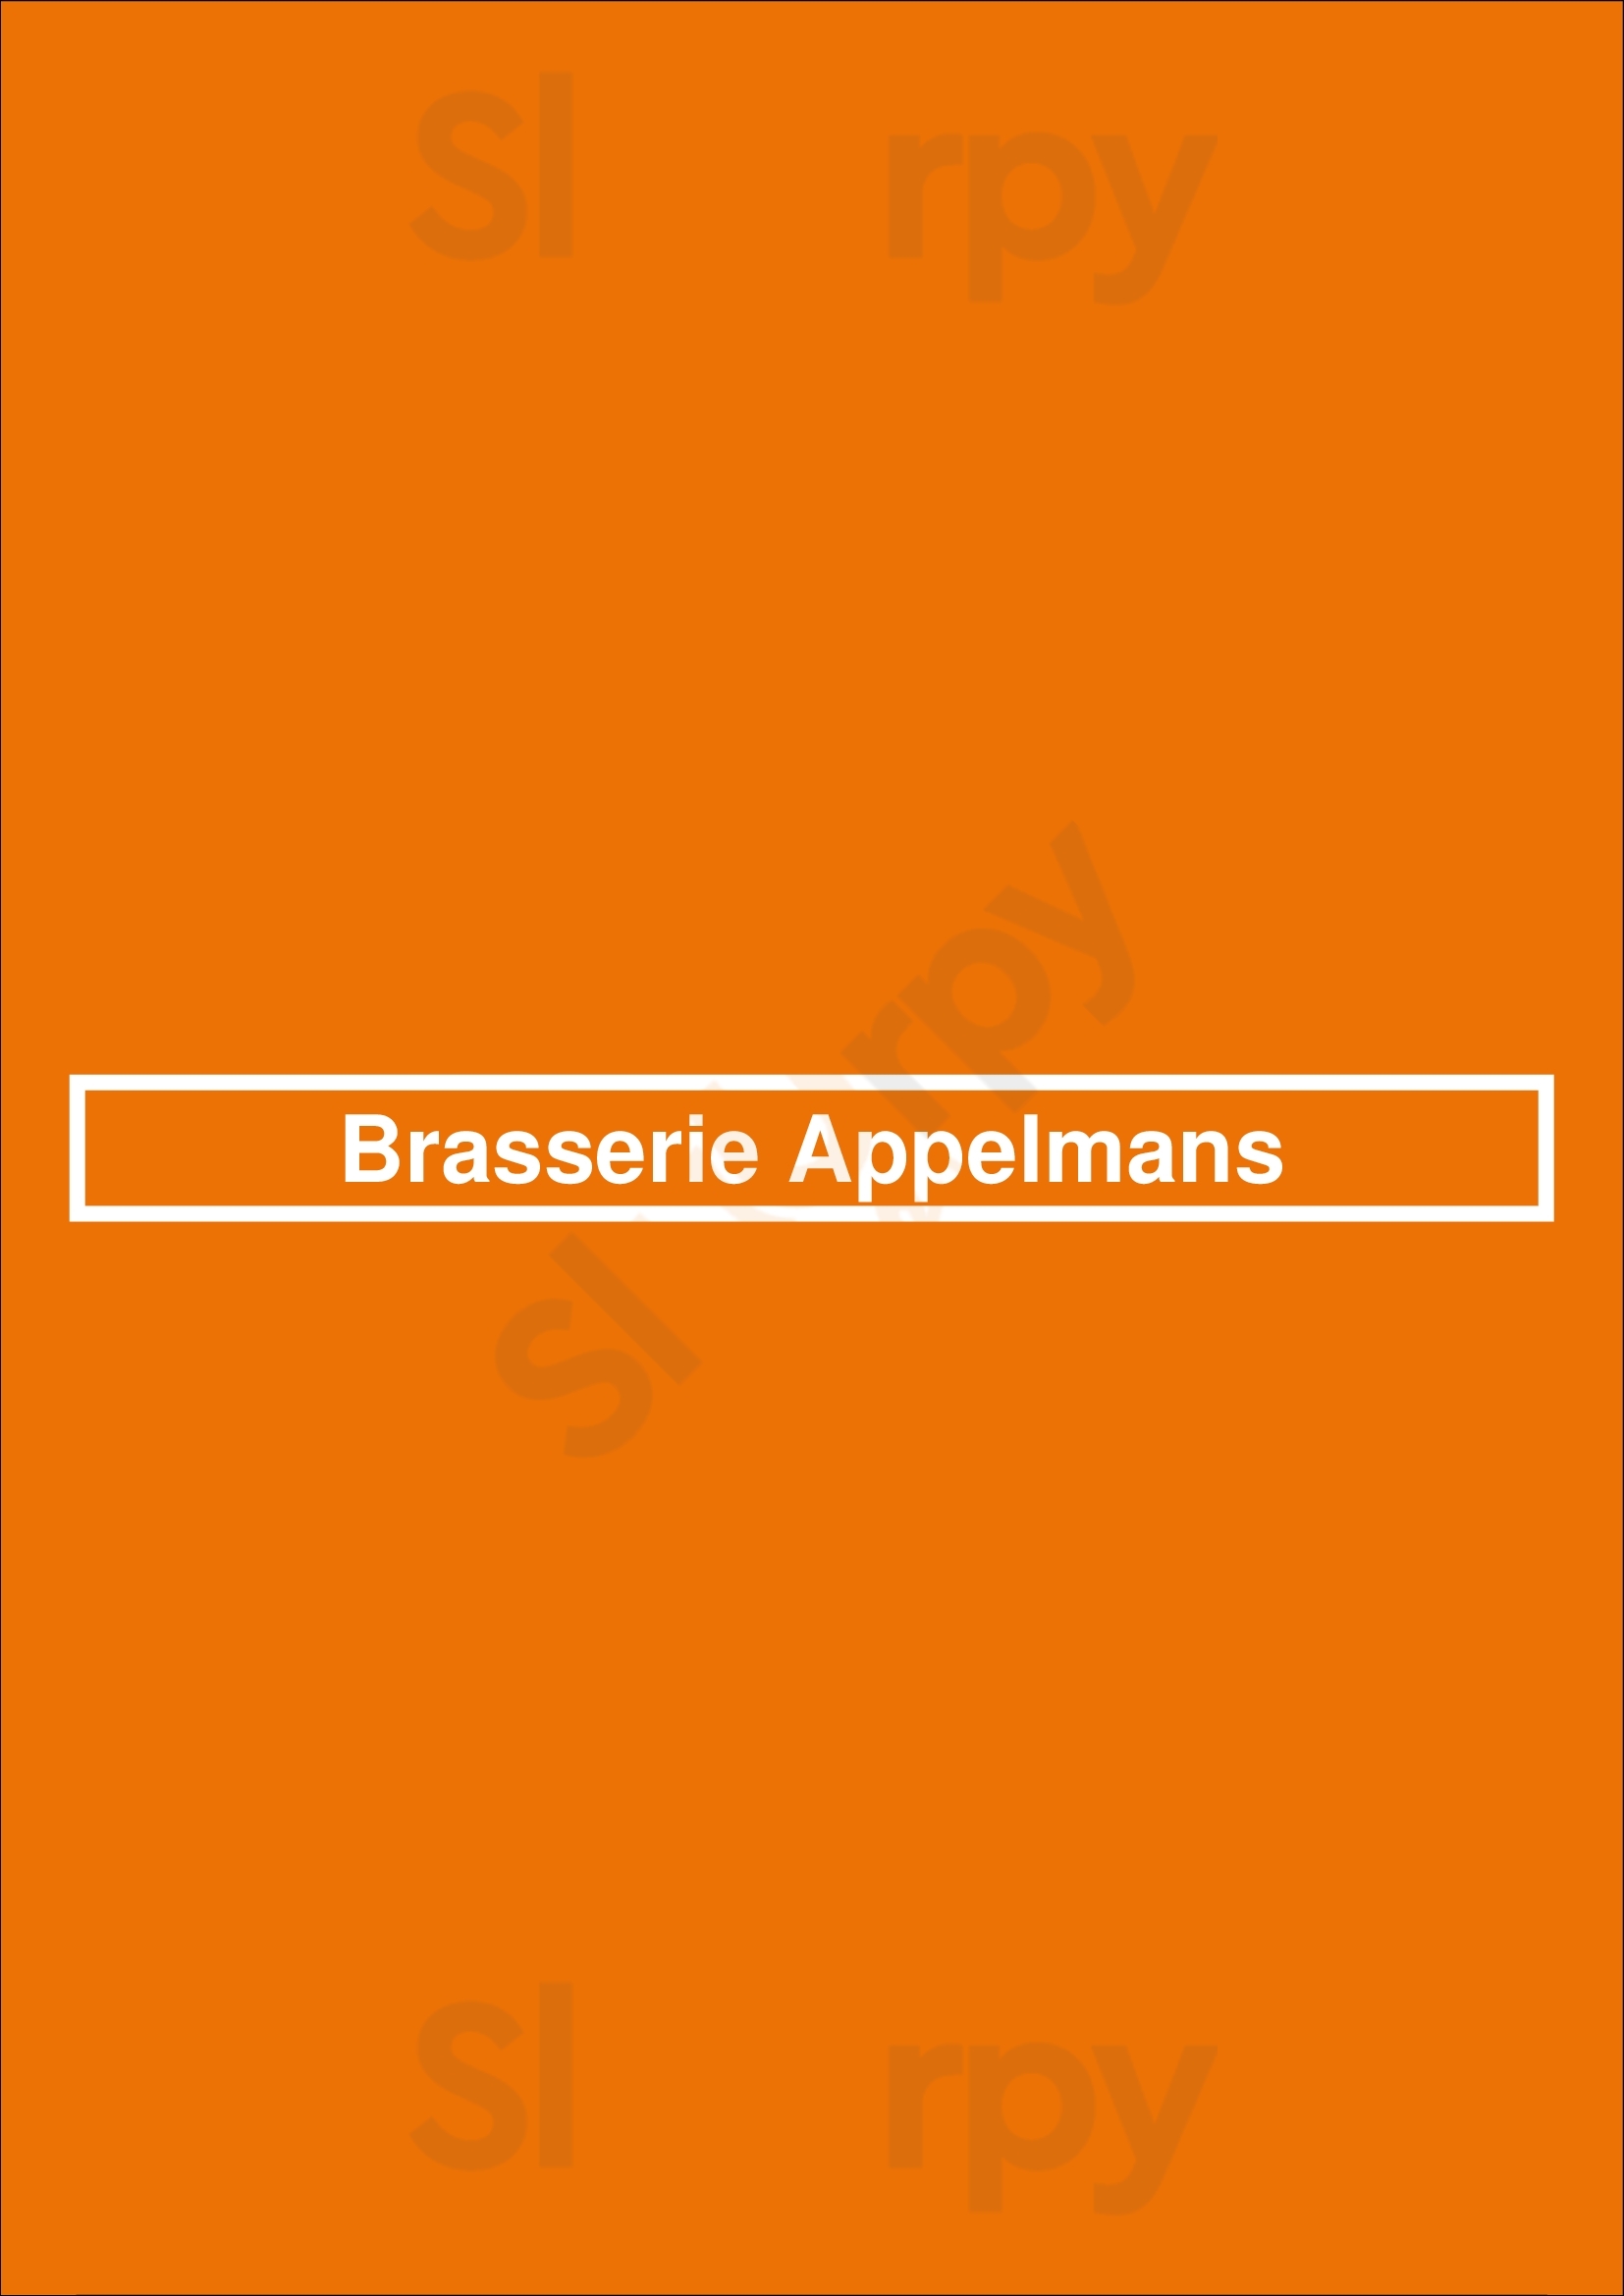 Brasserie Appelmans Anvers Menu - 1